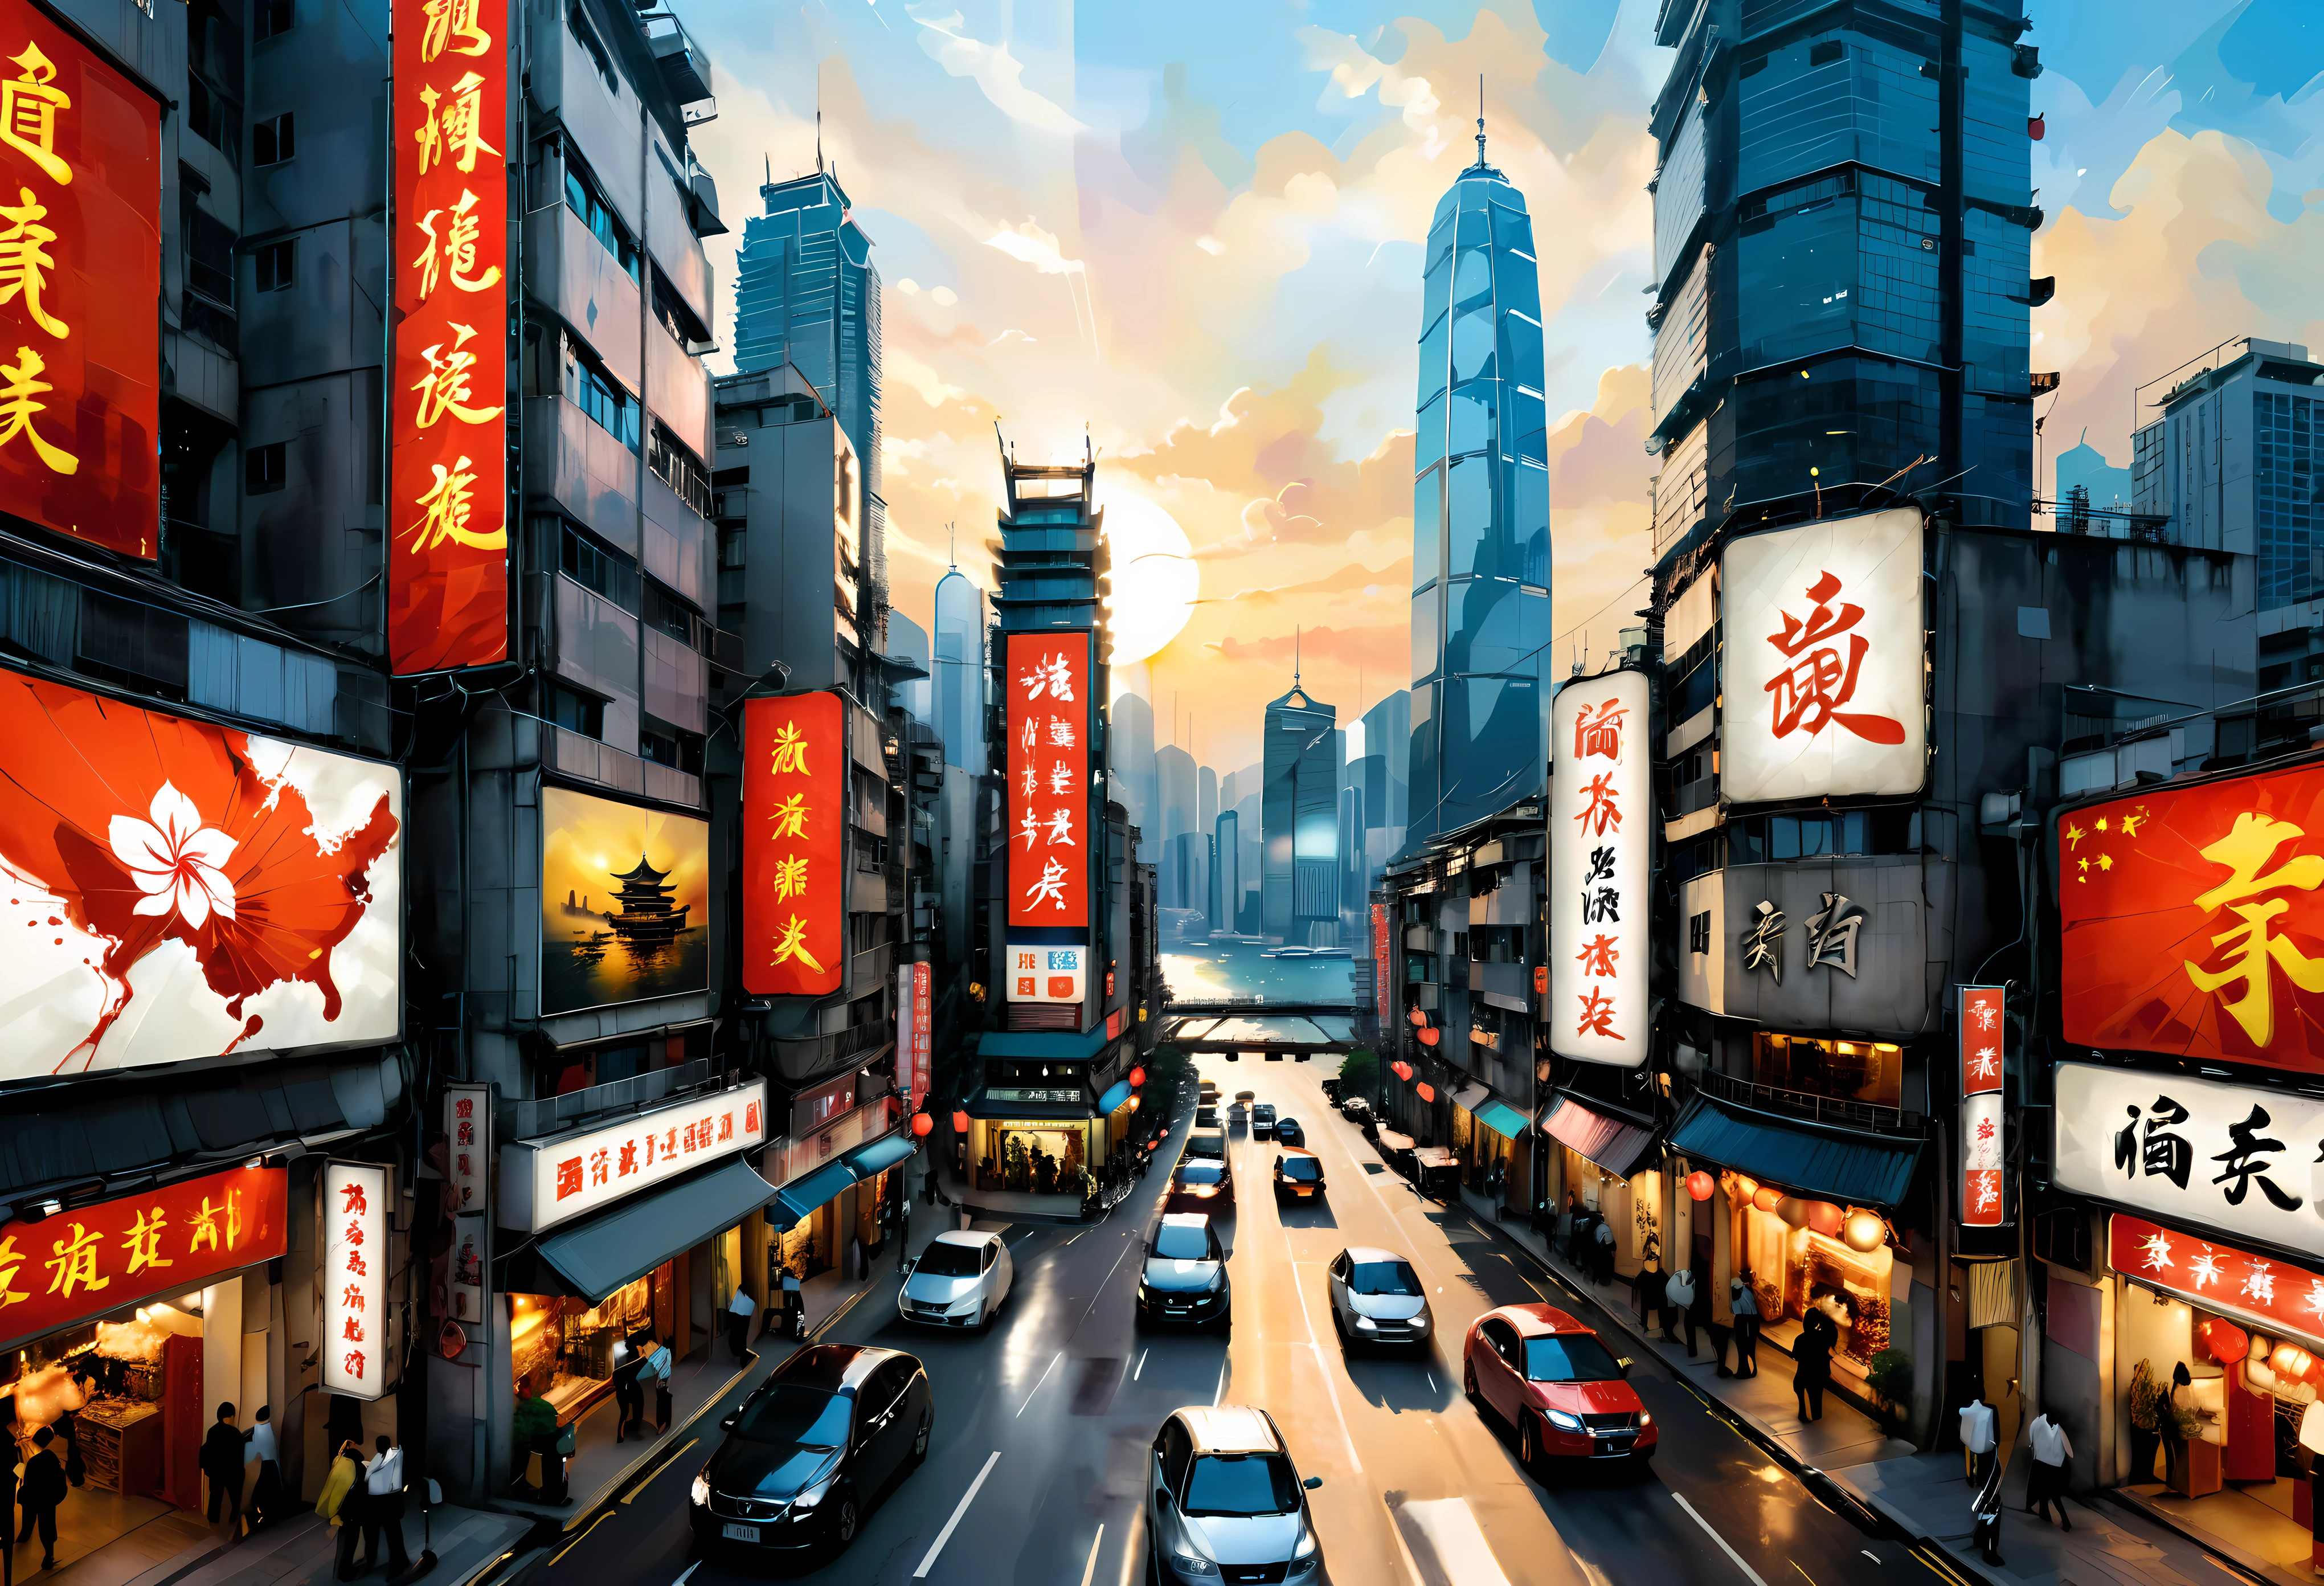 ((لوحة على طراز وو جوانزهونج):1.2),((الرسم بالحبر الصيني):1.2),((مفهوم الرسم الغربي):1.2),((التفسيرات الحديثة للموضوعات التقليدية)1.1), ((إنشاء تأثيرات بصرية فريدة من خلال اللون والخط):1.1),((عرض جوي):1.3) | A combination of Chinese ink art and Western painting of عرض جوي of Hong Kong modern skyline, (أفضل جودة, 4K, دقة عالية, تحفة:1.2), مفصلة للغاية, (حقيقي, photoحقيقي:1.37), نمط الحبر الصيني: ضربات دقيقة وغسلات بالحبر, أسلوب الرسم الغربي: الألوان النابضة بالحياة وضربات الفرشاة, ناطحات السحاب الشهيرة في أفق هونغ كونغ, شوارع المدينة الصاخبة مليئة بالناس والسيارات, ميناء فيكتوريا الرائع يستحم في ضوء الشمس الذهبي, القوارب الصينية التقليدية تبحر في الميناء, أضواء النيون تضيء سماء الليل, مزيج من الهندسة المعمارية التقليدية والحديثة, الخط الصيني التقليدي الذي يعرض تفاصيل لافتات الشوارع واللوحات الإعلانية, مزيج من العناصر الثقافية الصينية والغربية في الملابس والأزياء, مزيج من اللغة الصينية والإنجليزية في لافتات الشوارع وأسماء المتاجر, منظور درامي من نقطة مراقبة عالية تعرض عمودية المدينة, التفاعل بين الضوء والظلال يعزز عمق وأبعاد اللوحة, القوام المتناقض من الخرسانة, زجاج, والطبيعة في منظر المدينة, دمج دقيق للرموز والزخارف الصينية التي تمثل الحظ, ازدهار, والانسجام, تجربة غامرة تنقل المشاهدين إلى أجواء هونغ كونغ المتنوعة والحيوية.